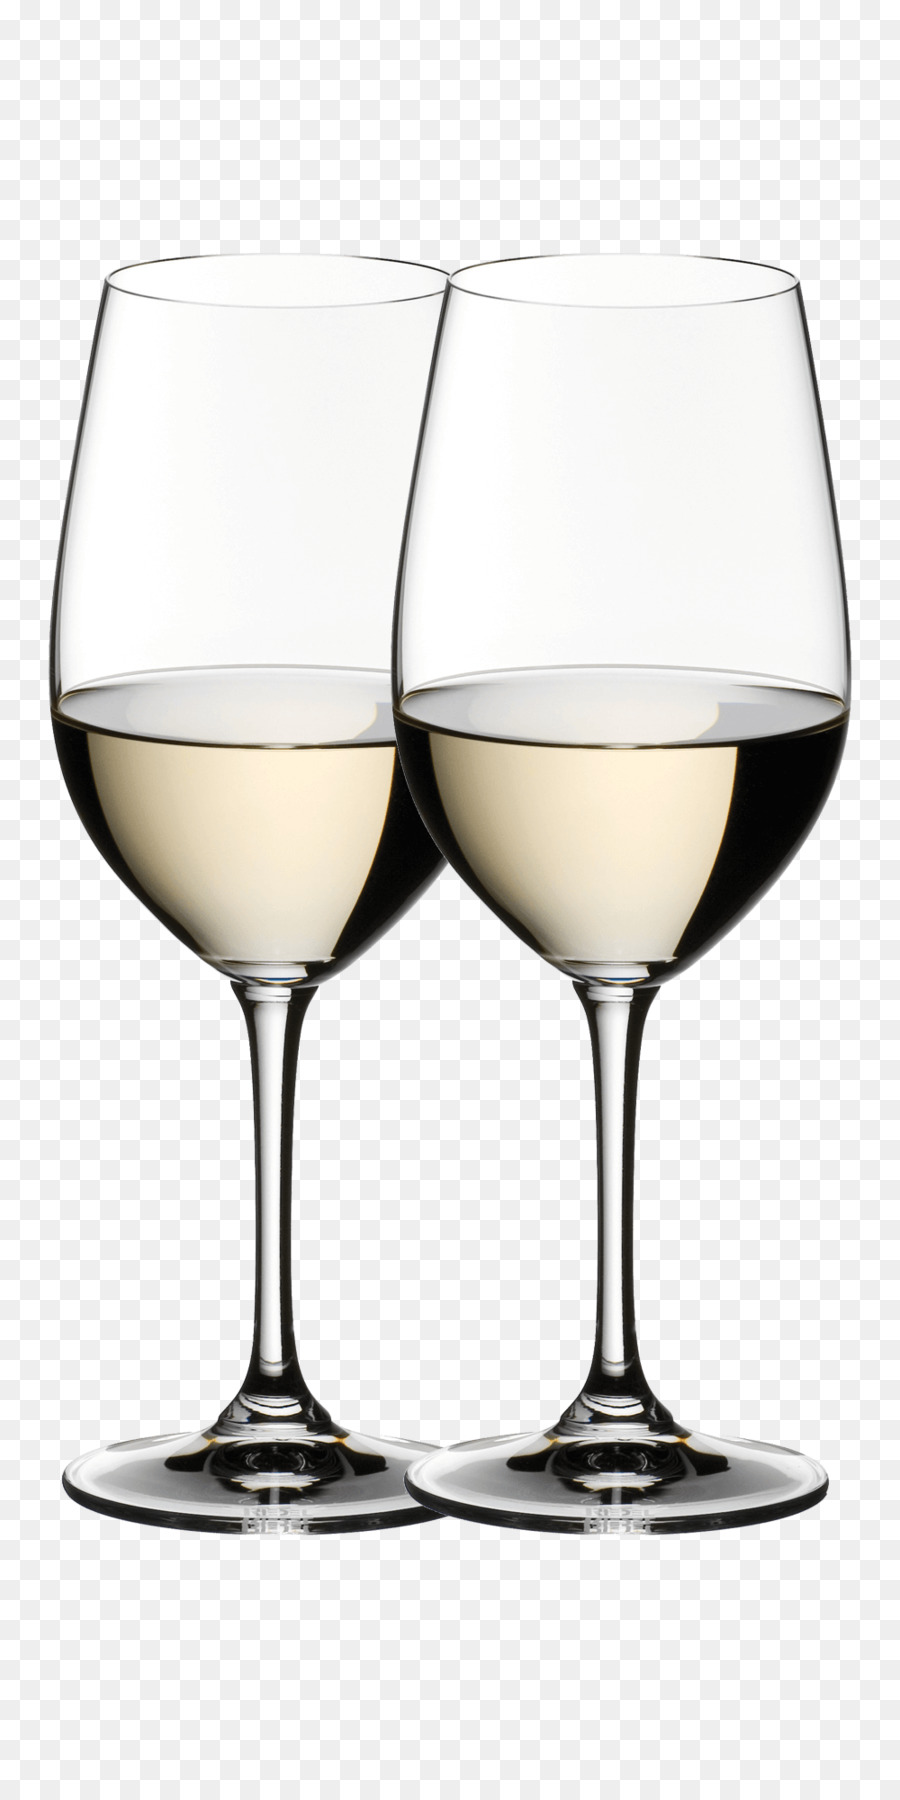 Rượu vang, Riesling, Zinfandel, Chianti DOCG Sauvignon blanc - Rượu